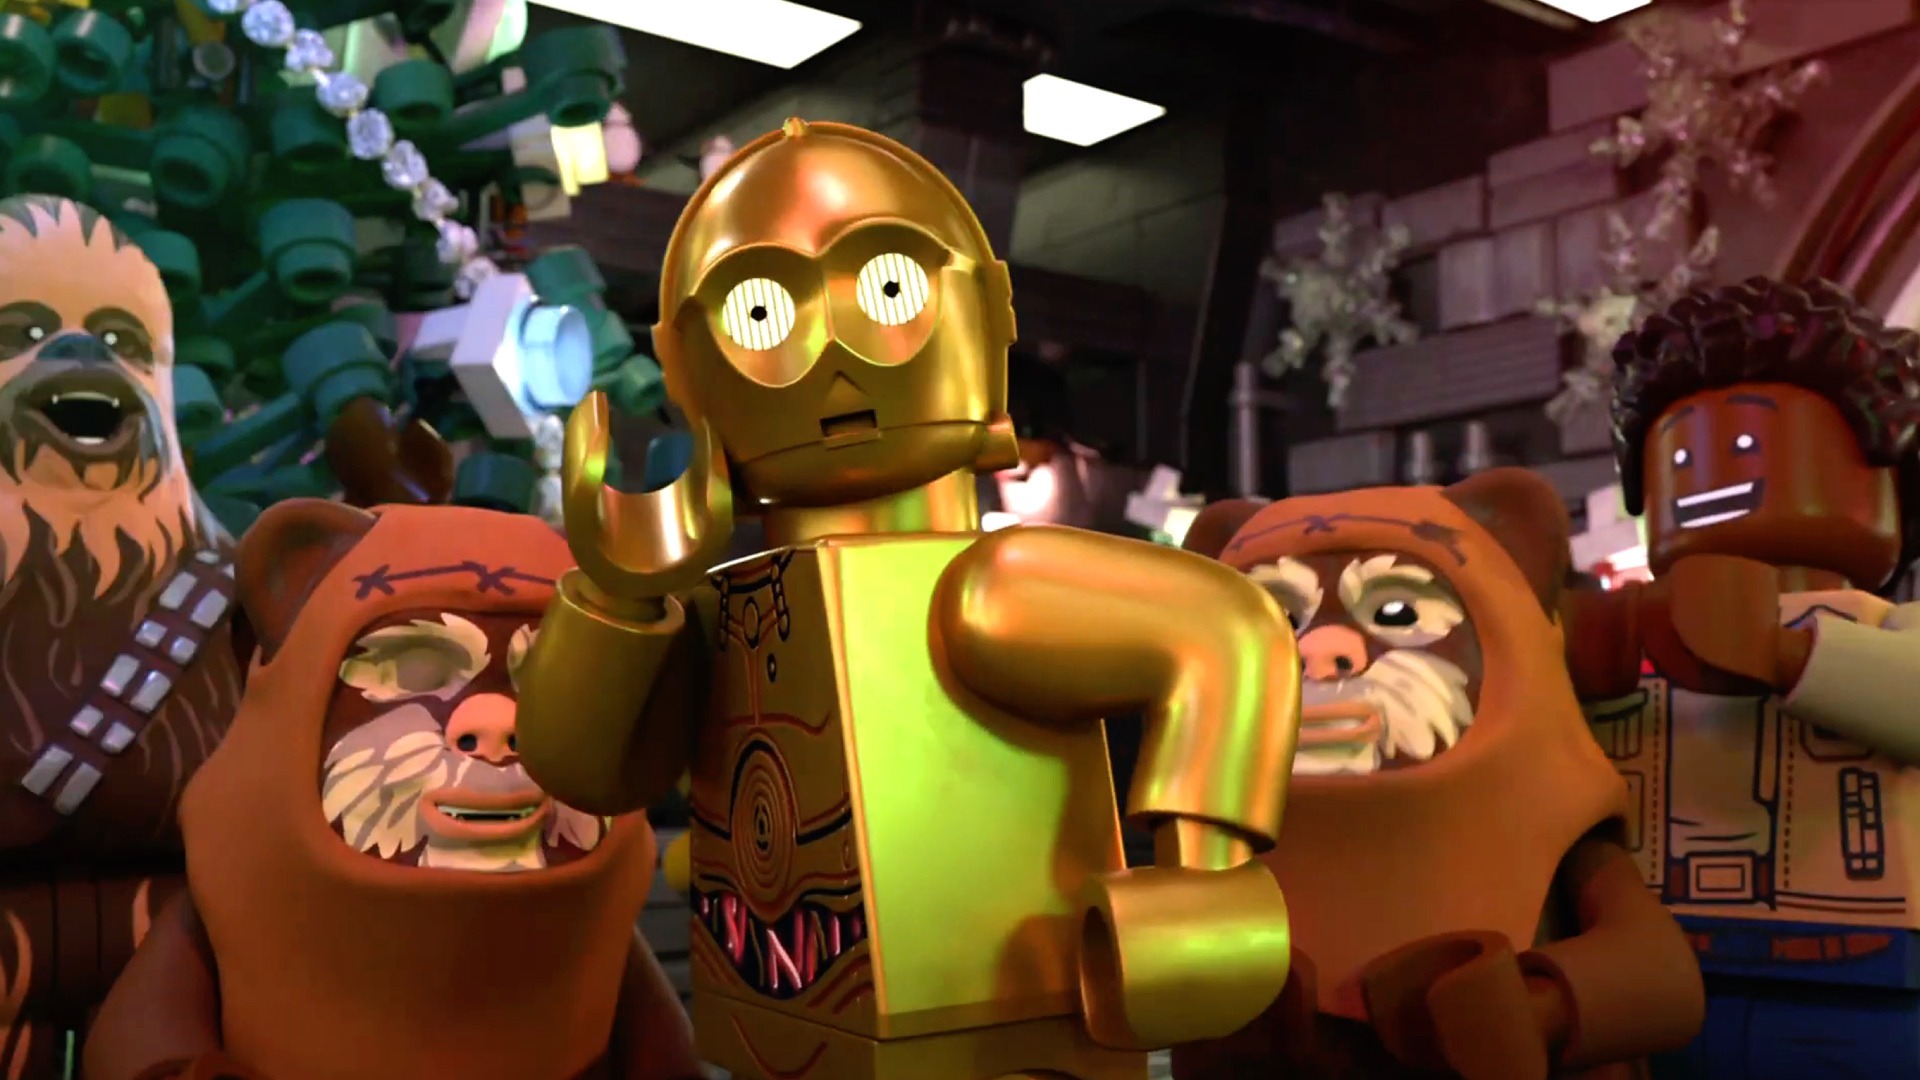 Lego Star Wars: The Skywalker Saga review – a feast of fan